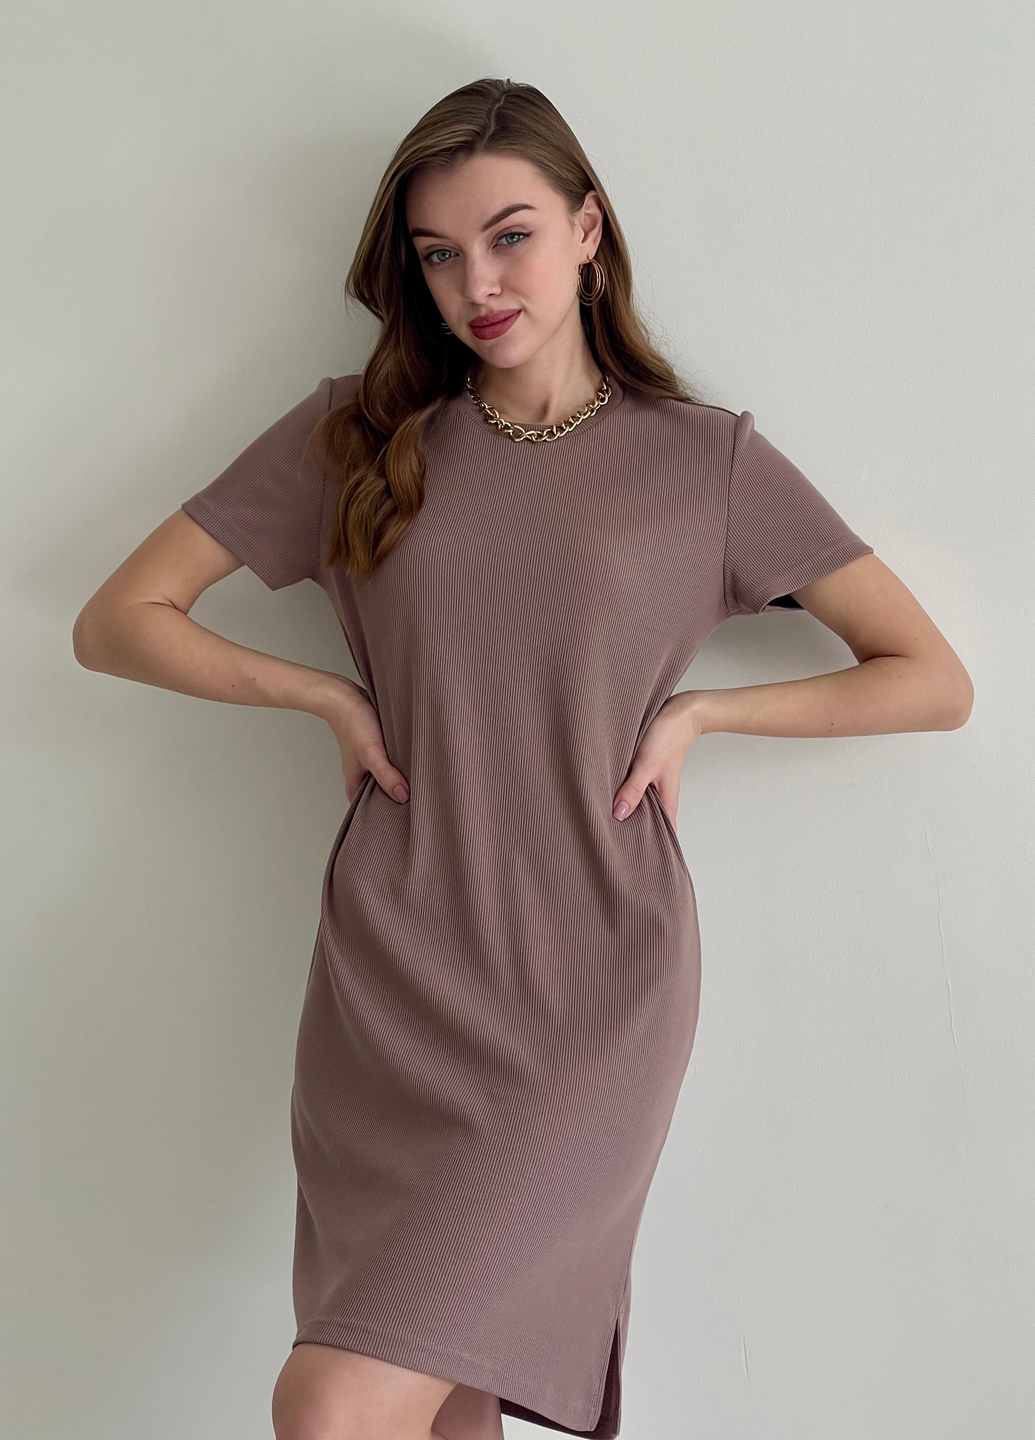 Купить Платье-футболка до колена в рубчик цвета мокко Merlini Милан 700000144 размер 42-44 (S-M) в интернет-магазине